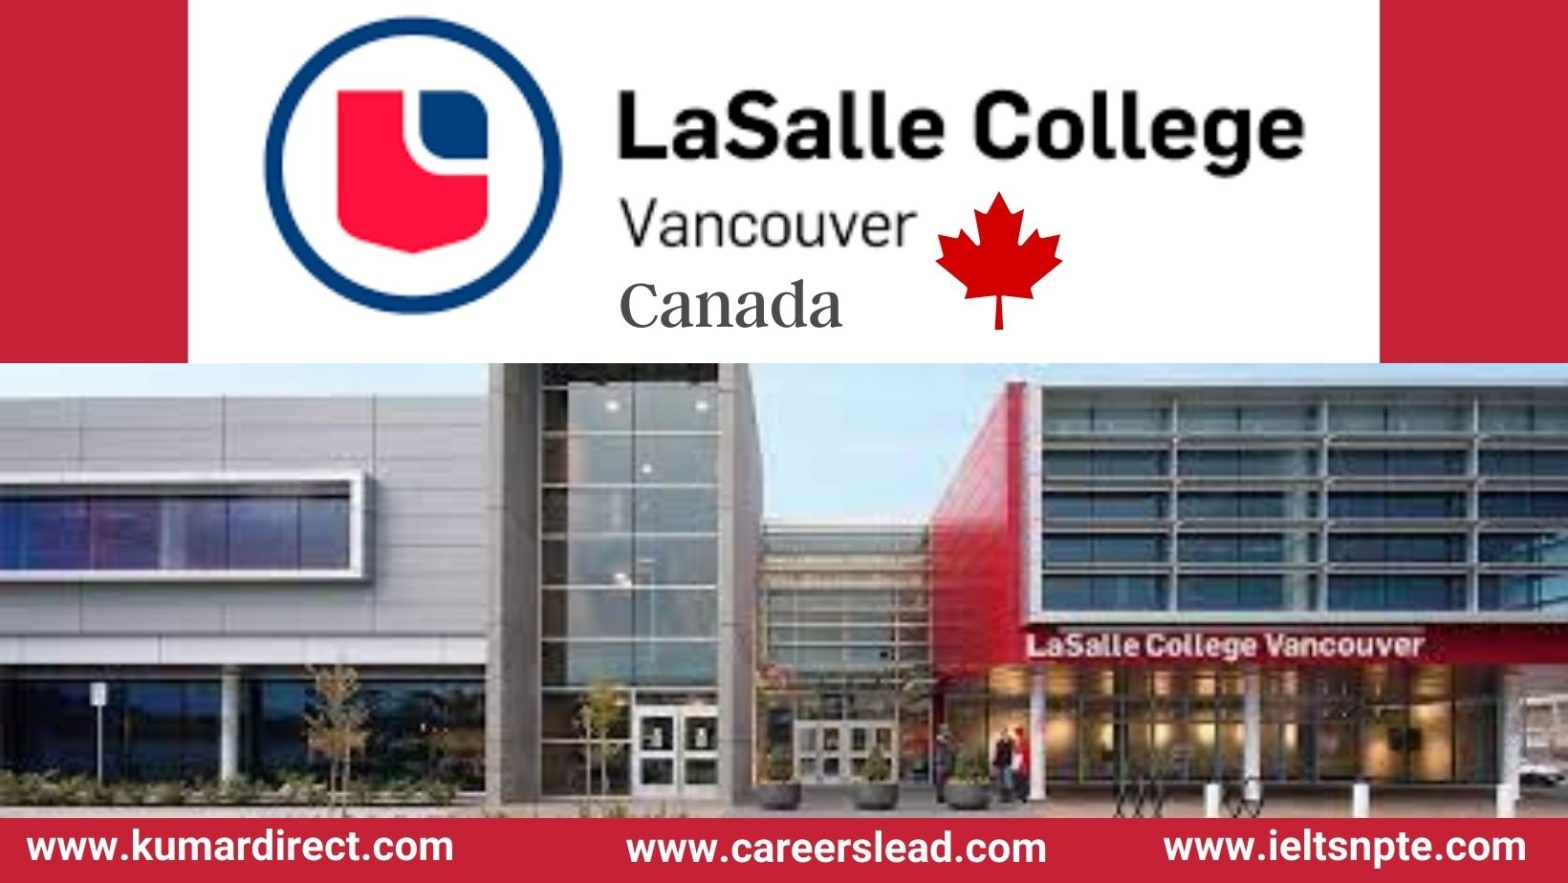 La Salle College Vancouver Canada